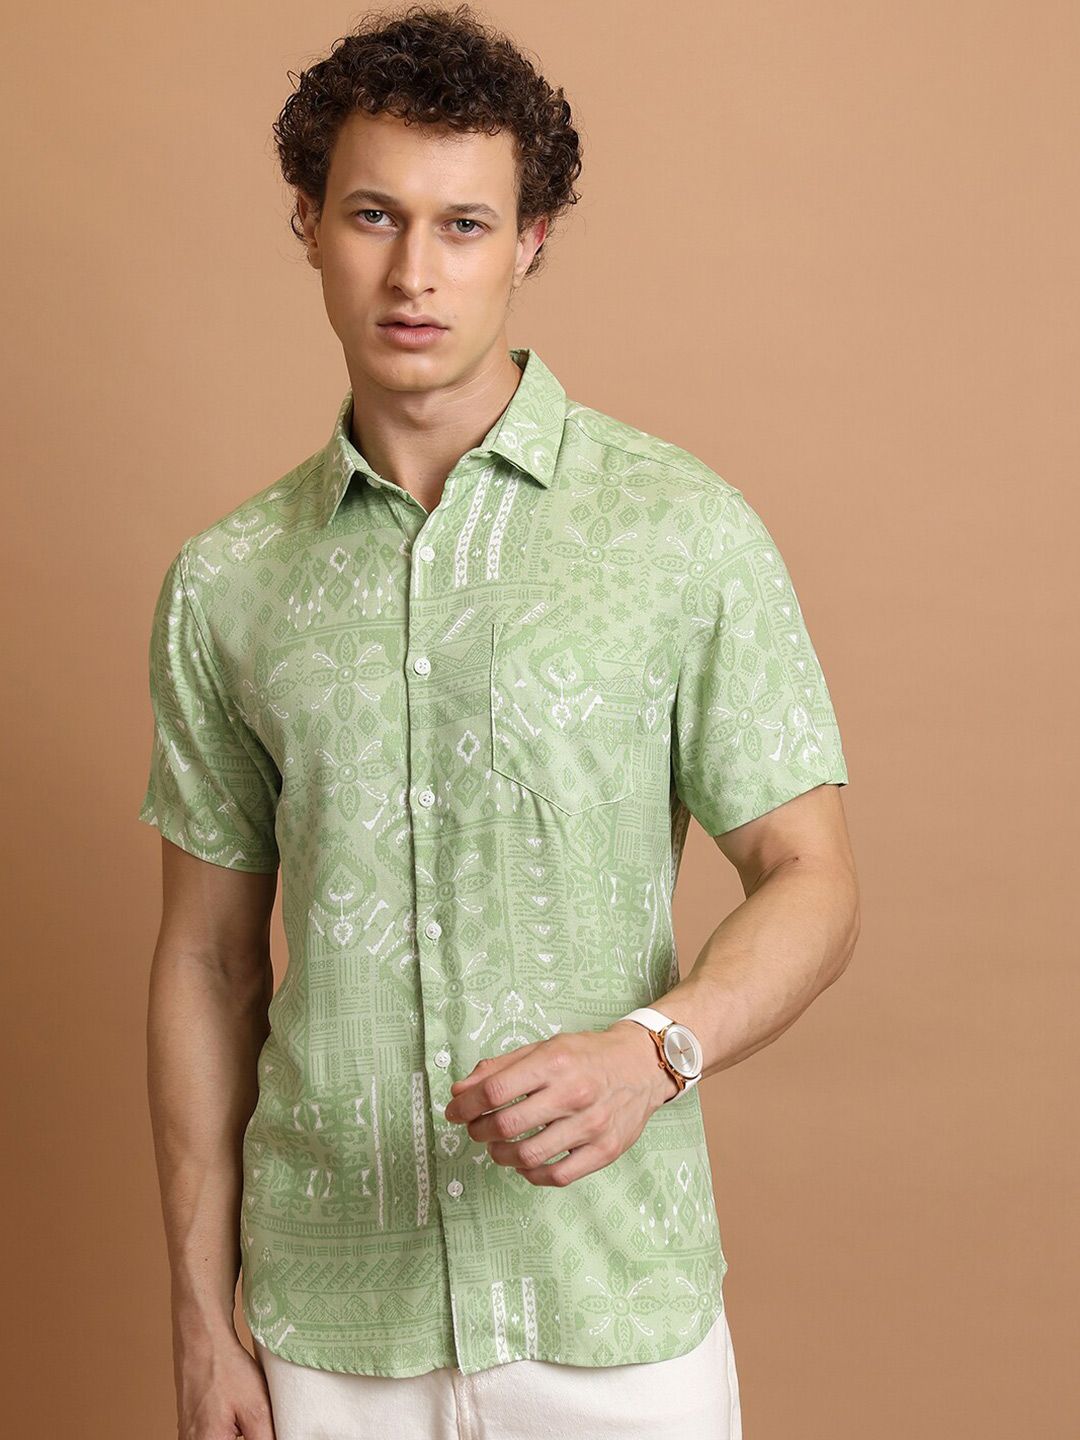 HIGHLANDER Slim Fit Ethnic Motifs Printed Spread Collar Casual Shirt